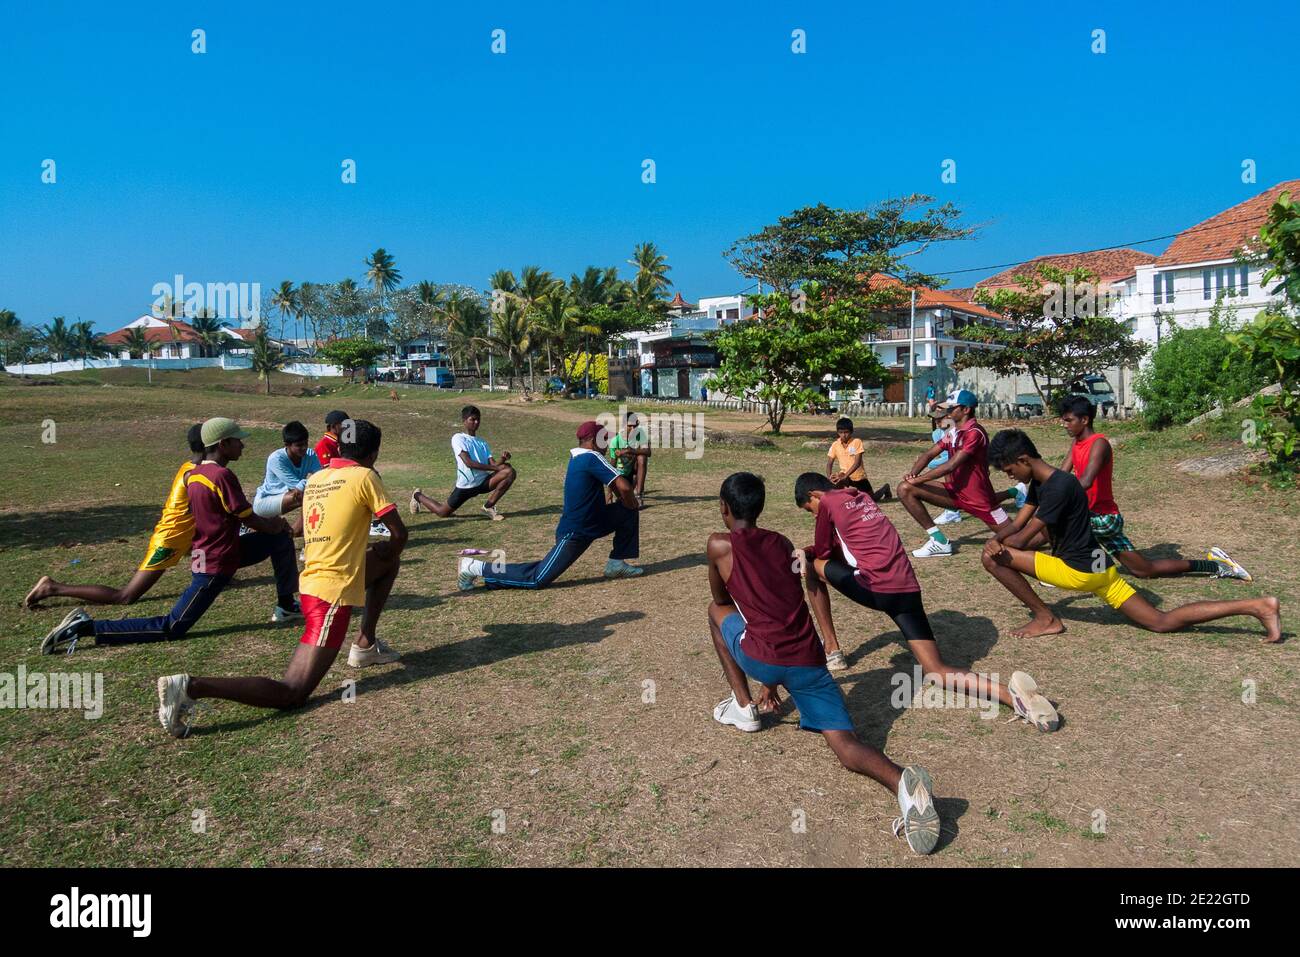 Galle, Sri lanka, Asie : l'équipe de cricket s'entraîne à l'extérieur sur une pelouse urbaine Banque D'Images